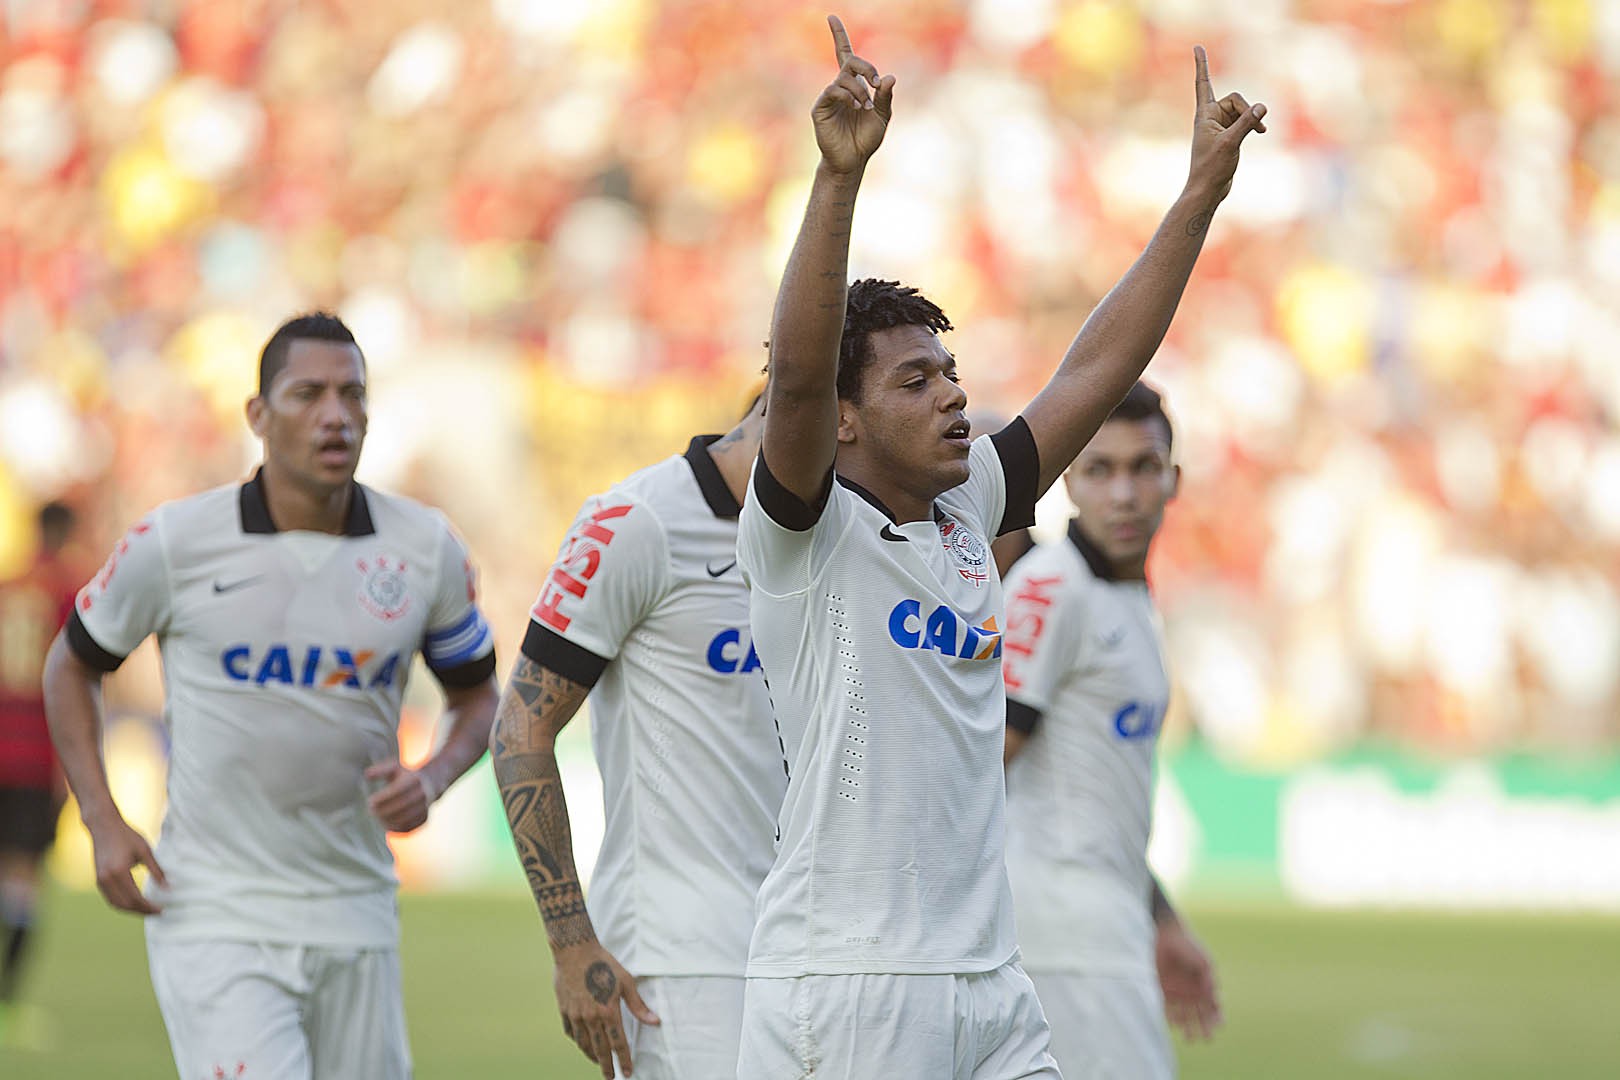 Corinthians: 17º colocado na 6º rodada do Brasileirão de 2012 com 4 pontos. Terminou o campeonato em 6º lugar.